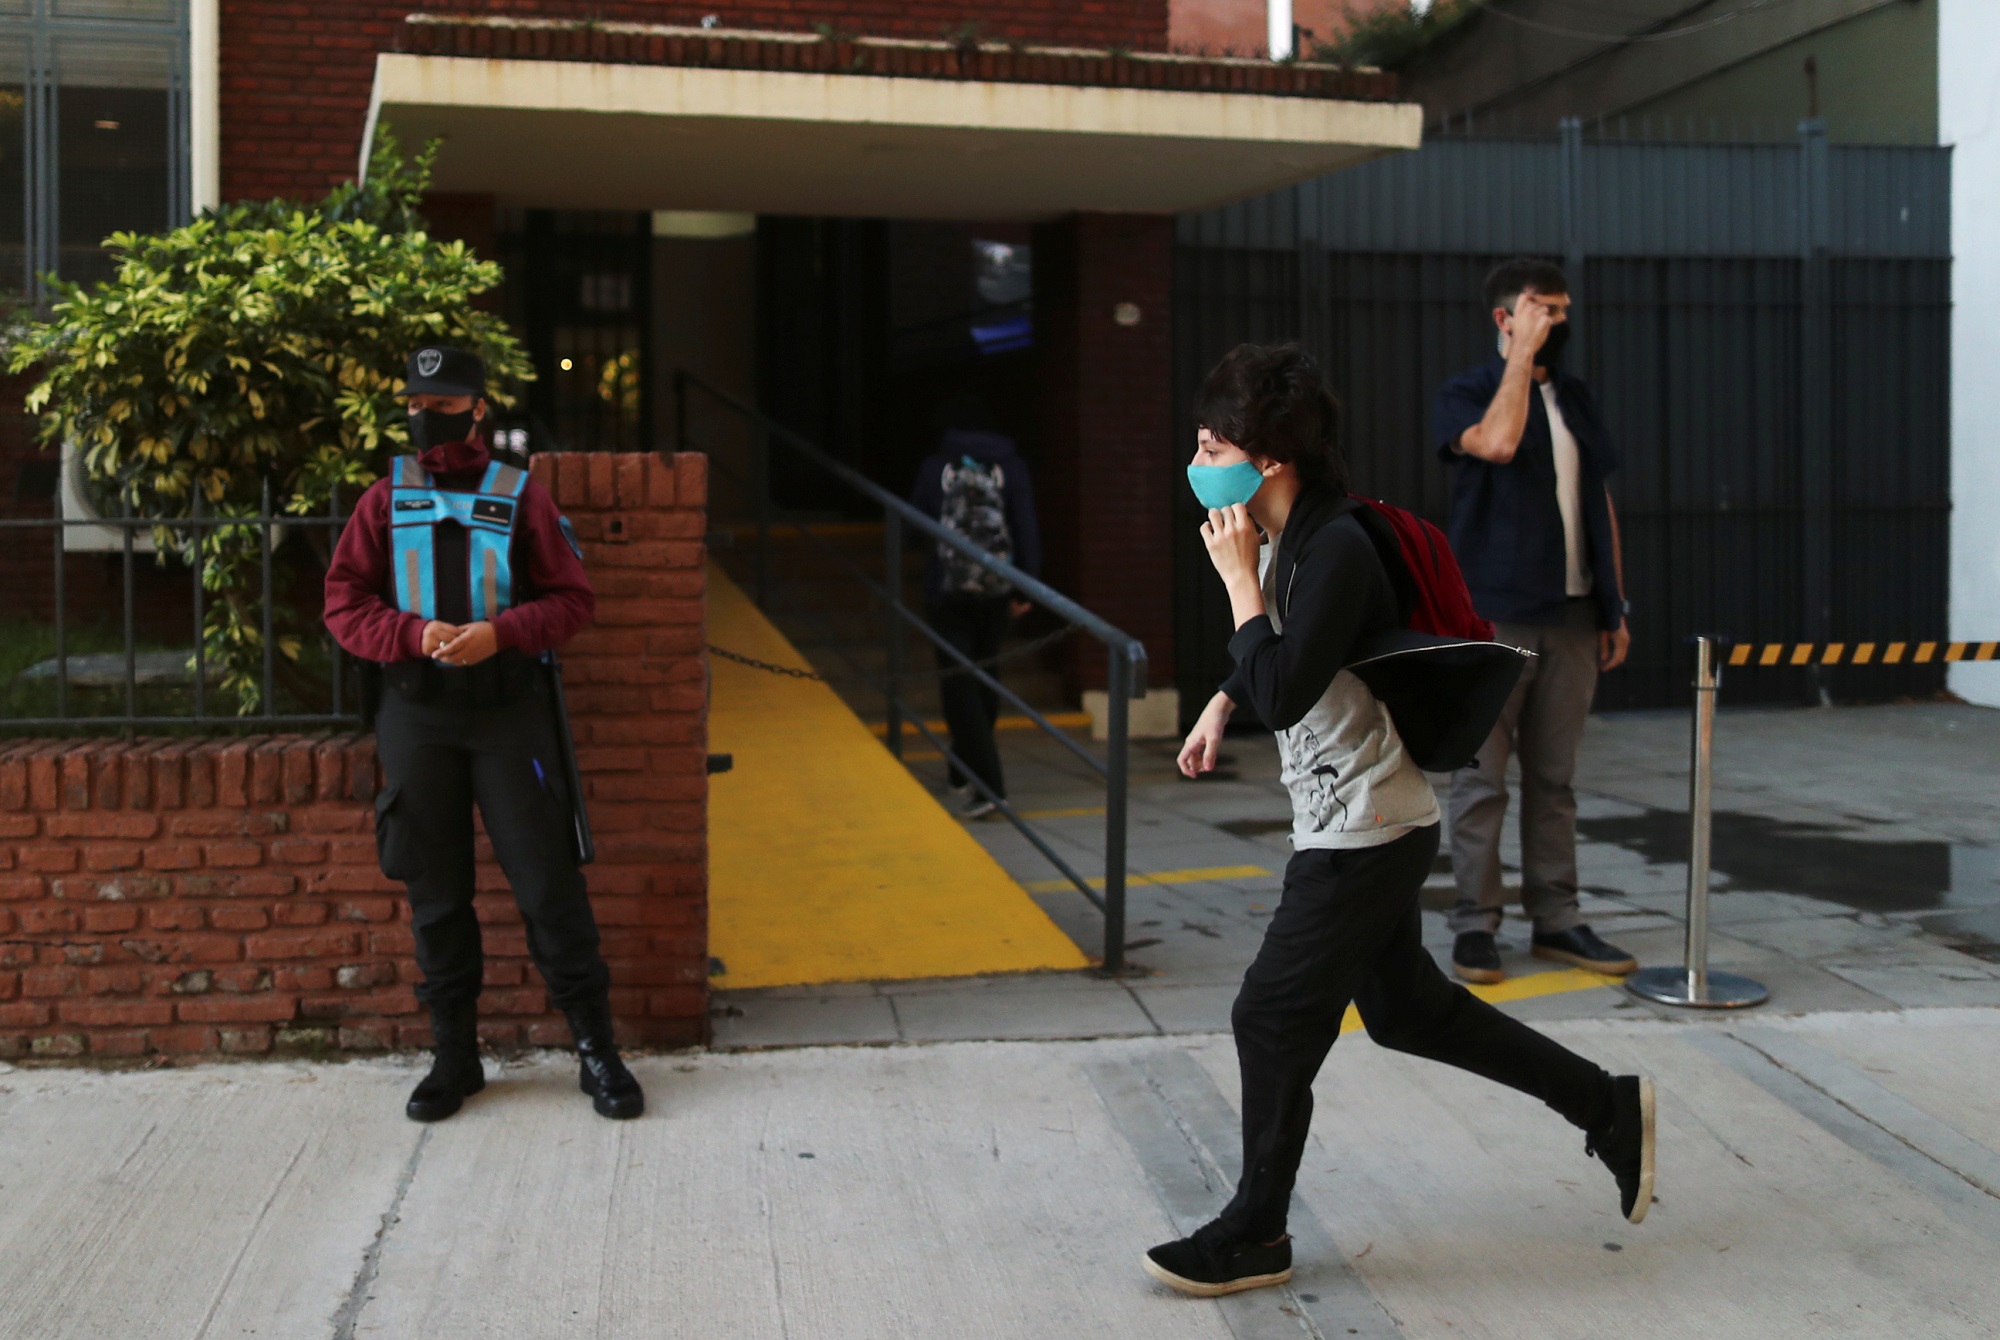 وصول طالب إلى مدرسة في الأرجنتين وسط تطبيق قواعد التباعد الجسدي ولبس الكمامة. (رويترز)